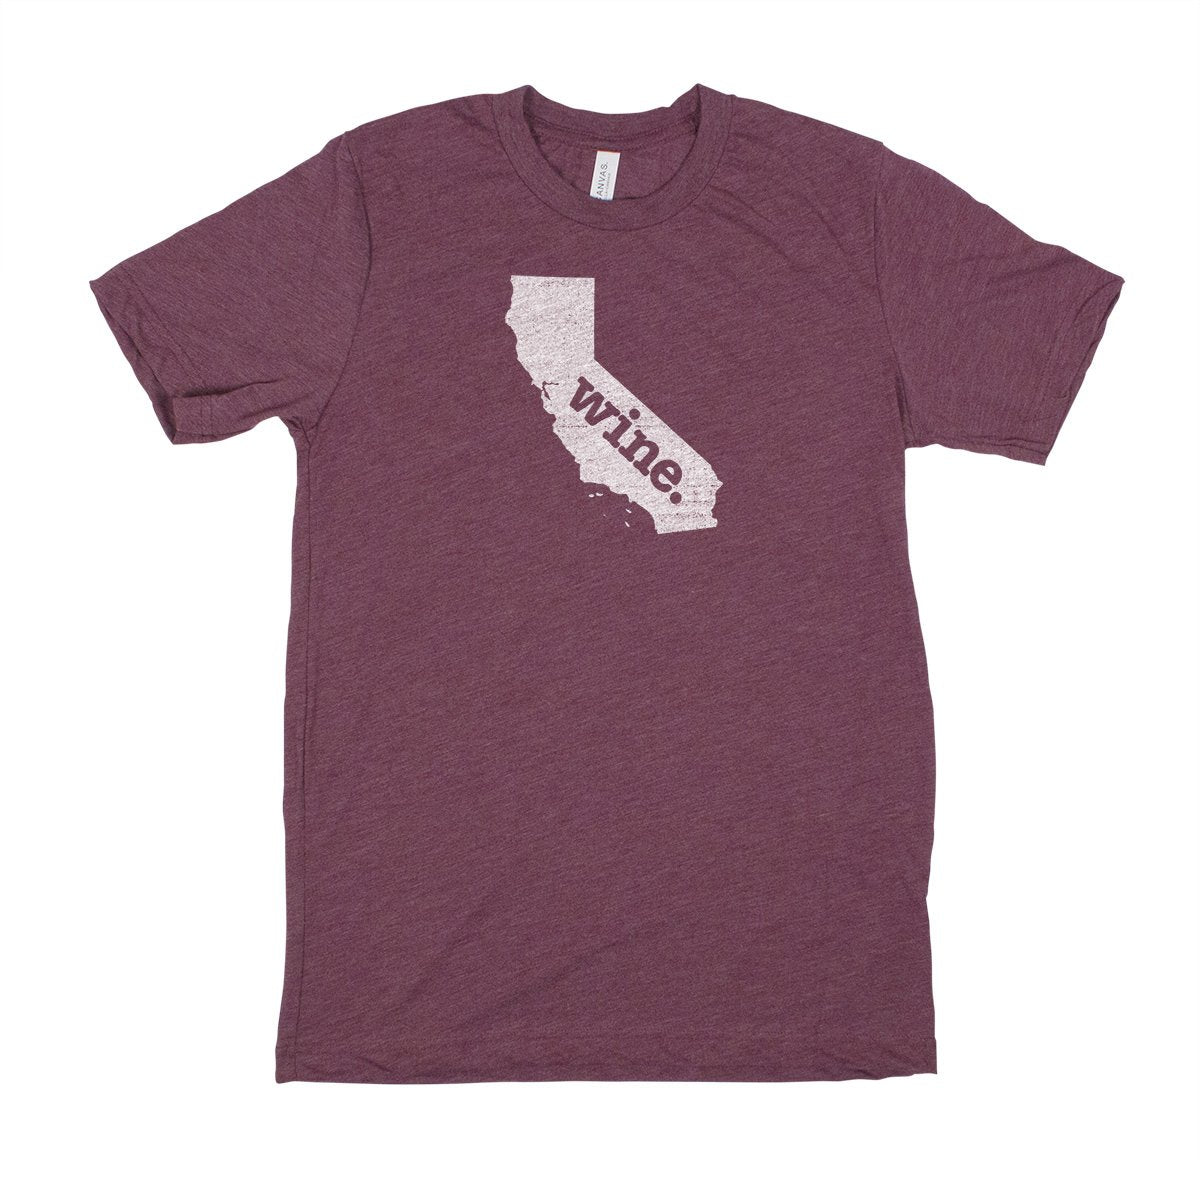 fish. Men's Unisex T-Shirt - Arizona